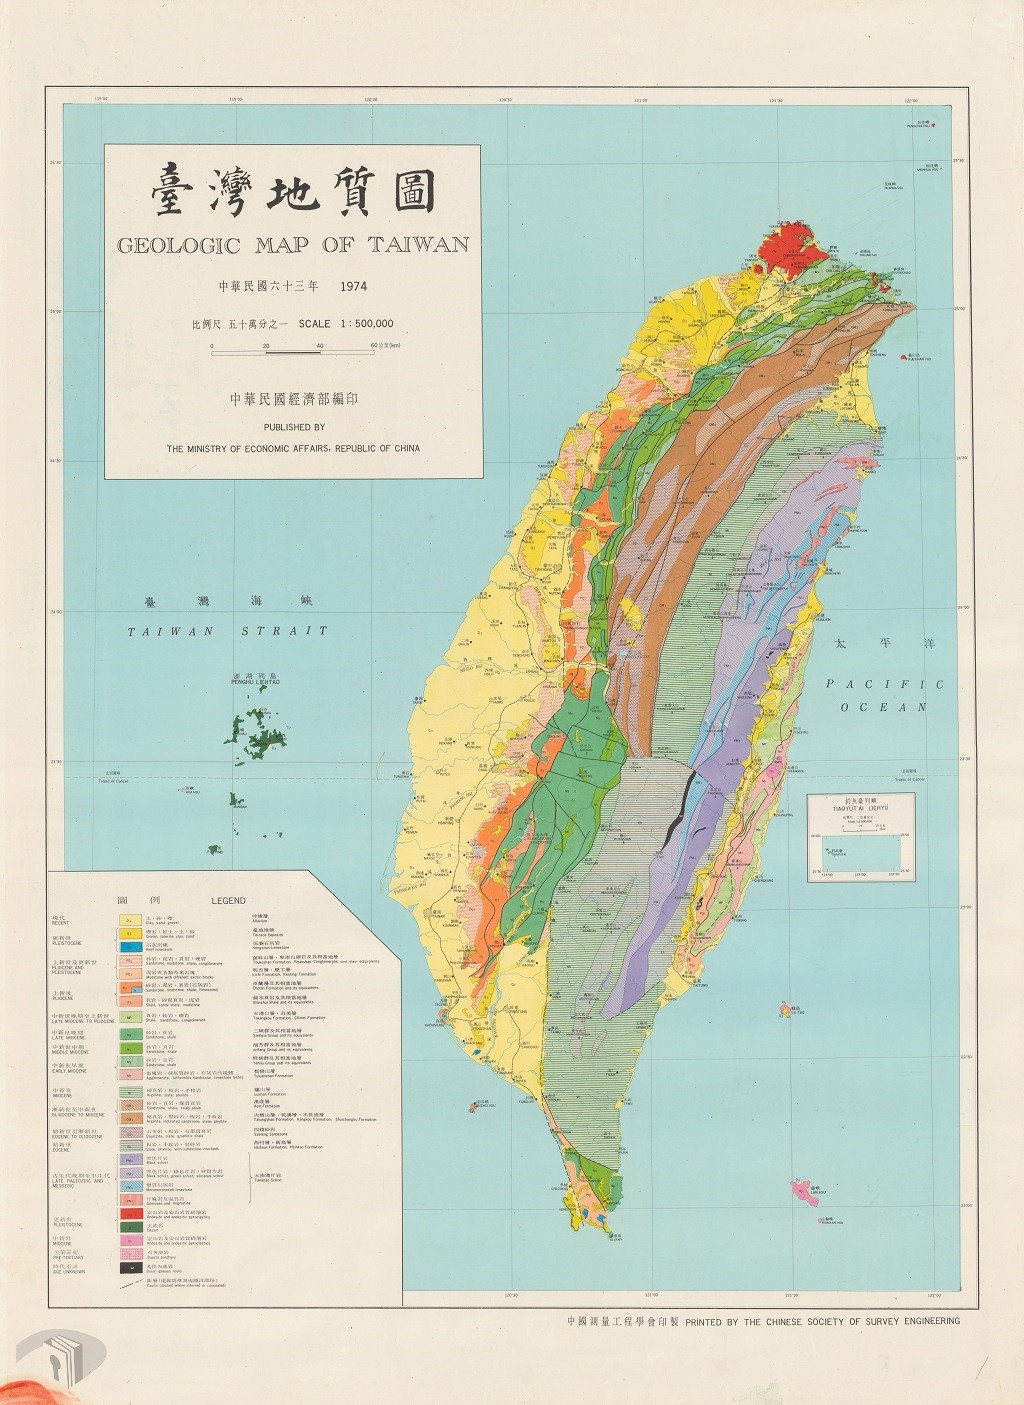 圖8 1974年臺灣地質圖